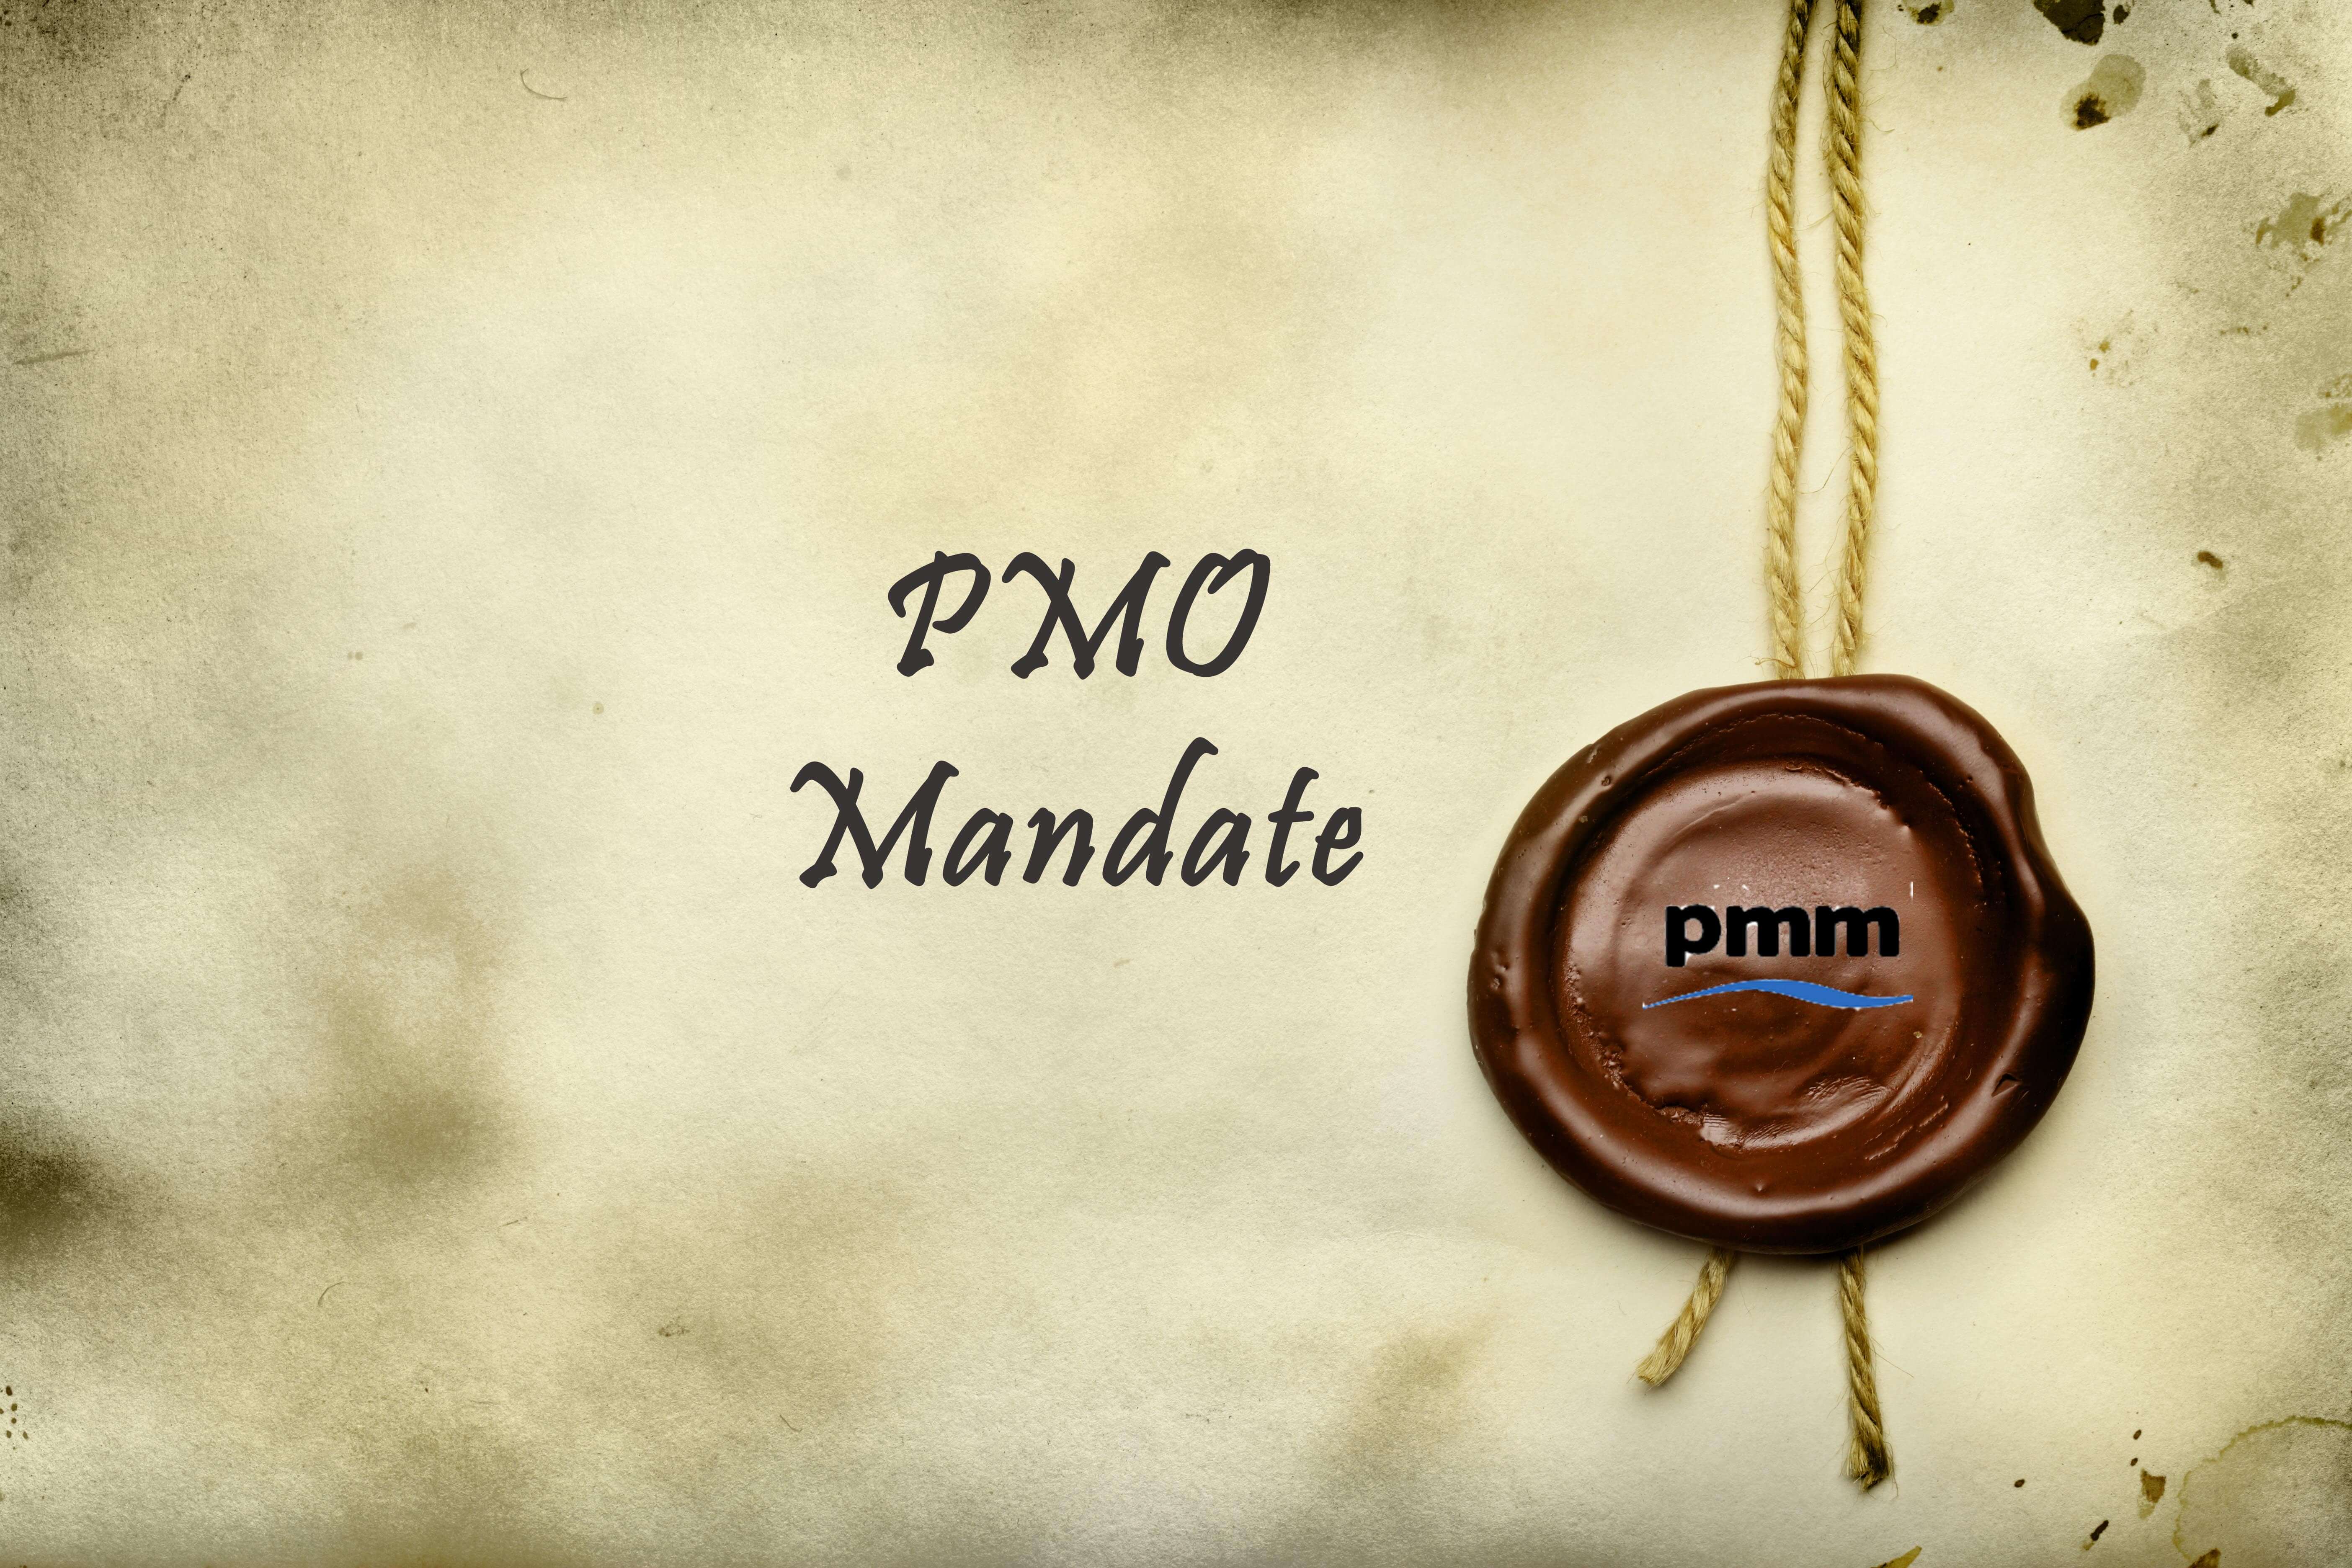 PMO mandate